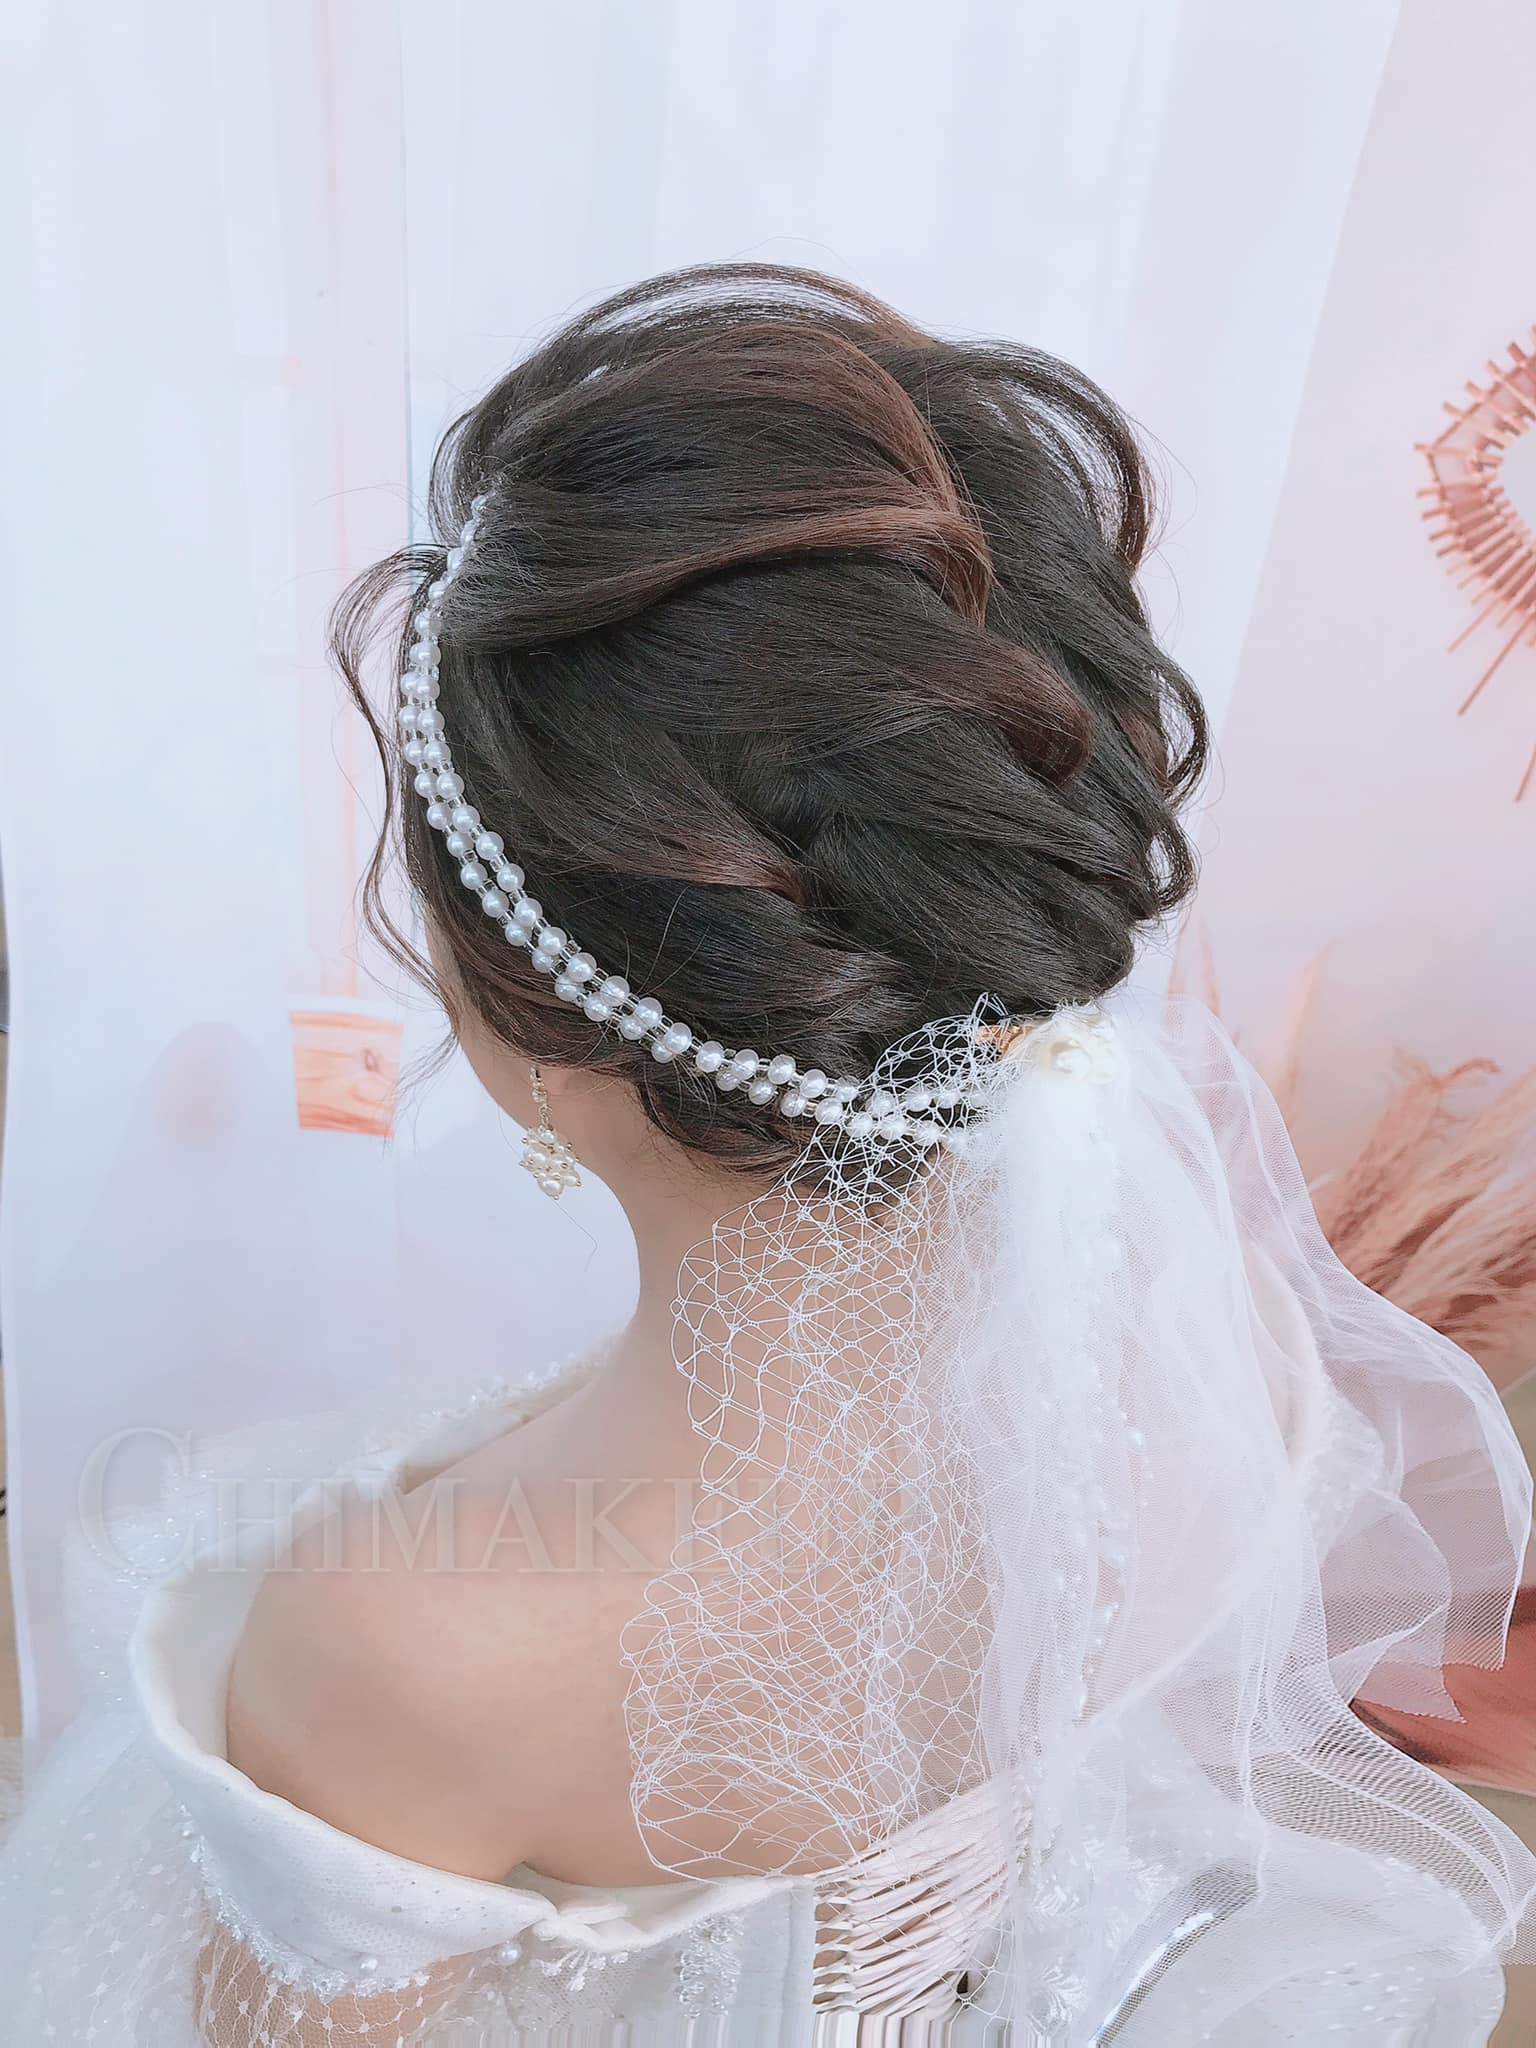 Học làm tóc cô dâu sẽ giúp bạn trở thành một chuyên gia về tóc cưới và giúp bạn tự tin hơn trong việc phục vụ khách hàng. Tại Mai Wedding, chúng tôi cung cấp khóa học tuyệt vời về phong cách tóc cưới để bạn học hỏi kinh nghiệm từ các chuyên gia hàng đầu của ngành.